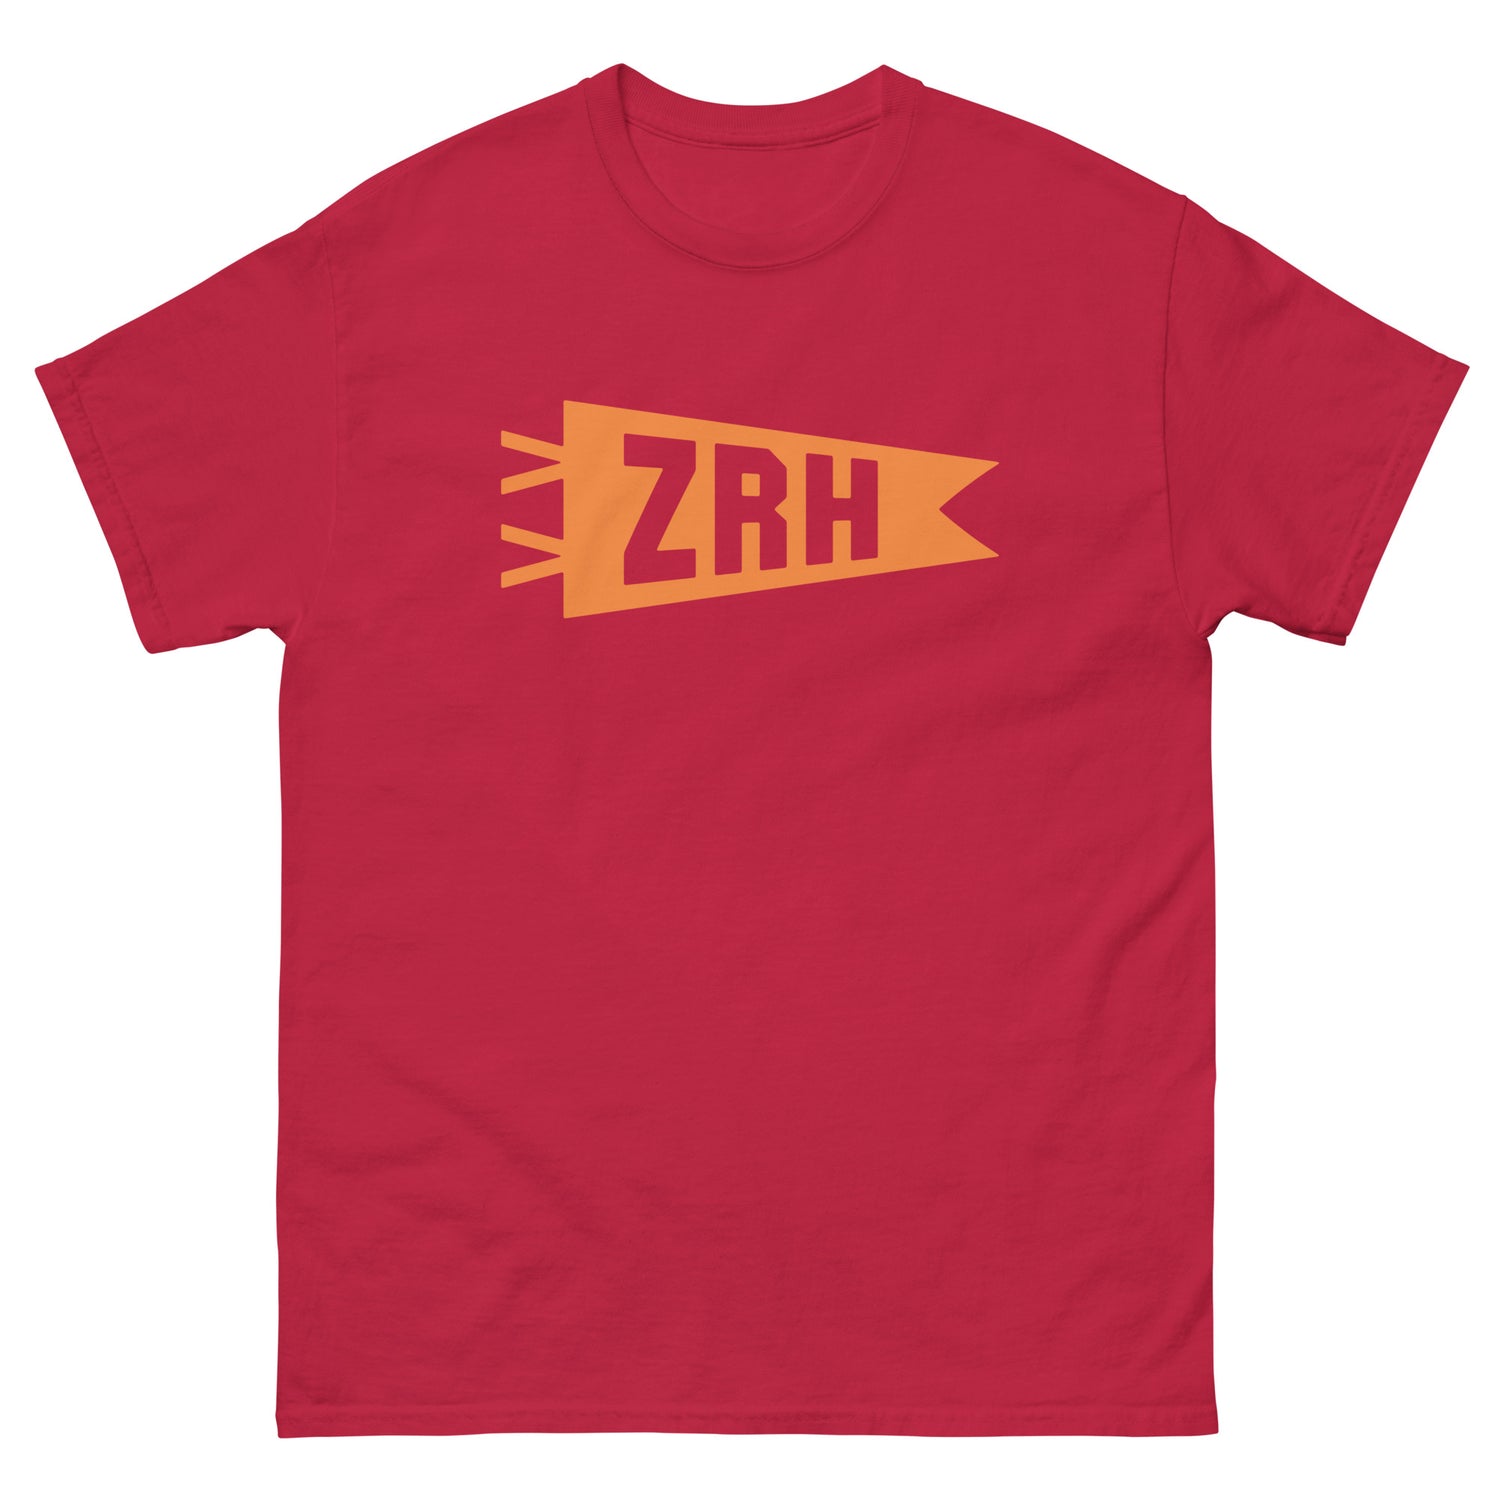 Zurich Switzerland Adult T-Shirts • ZRH Airport Code